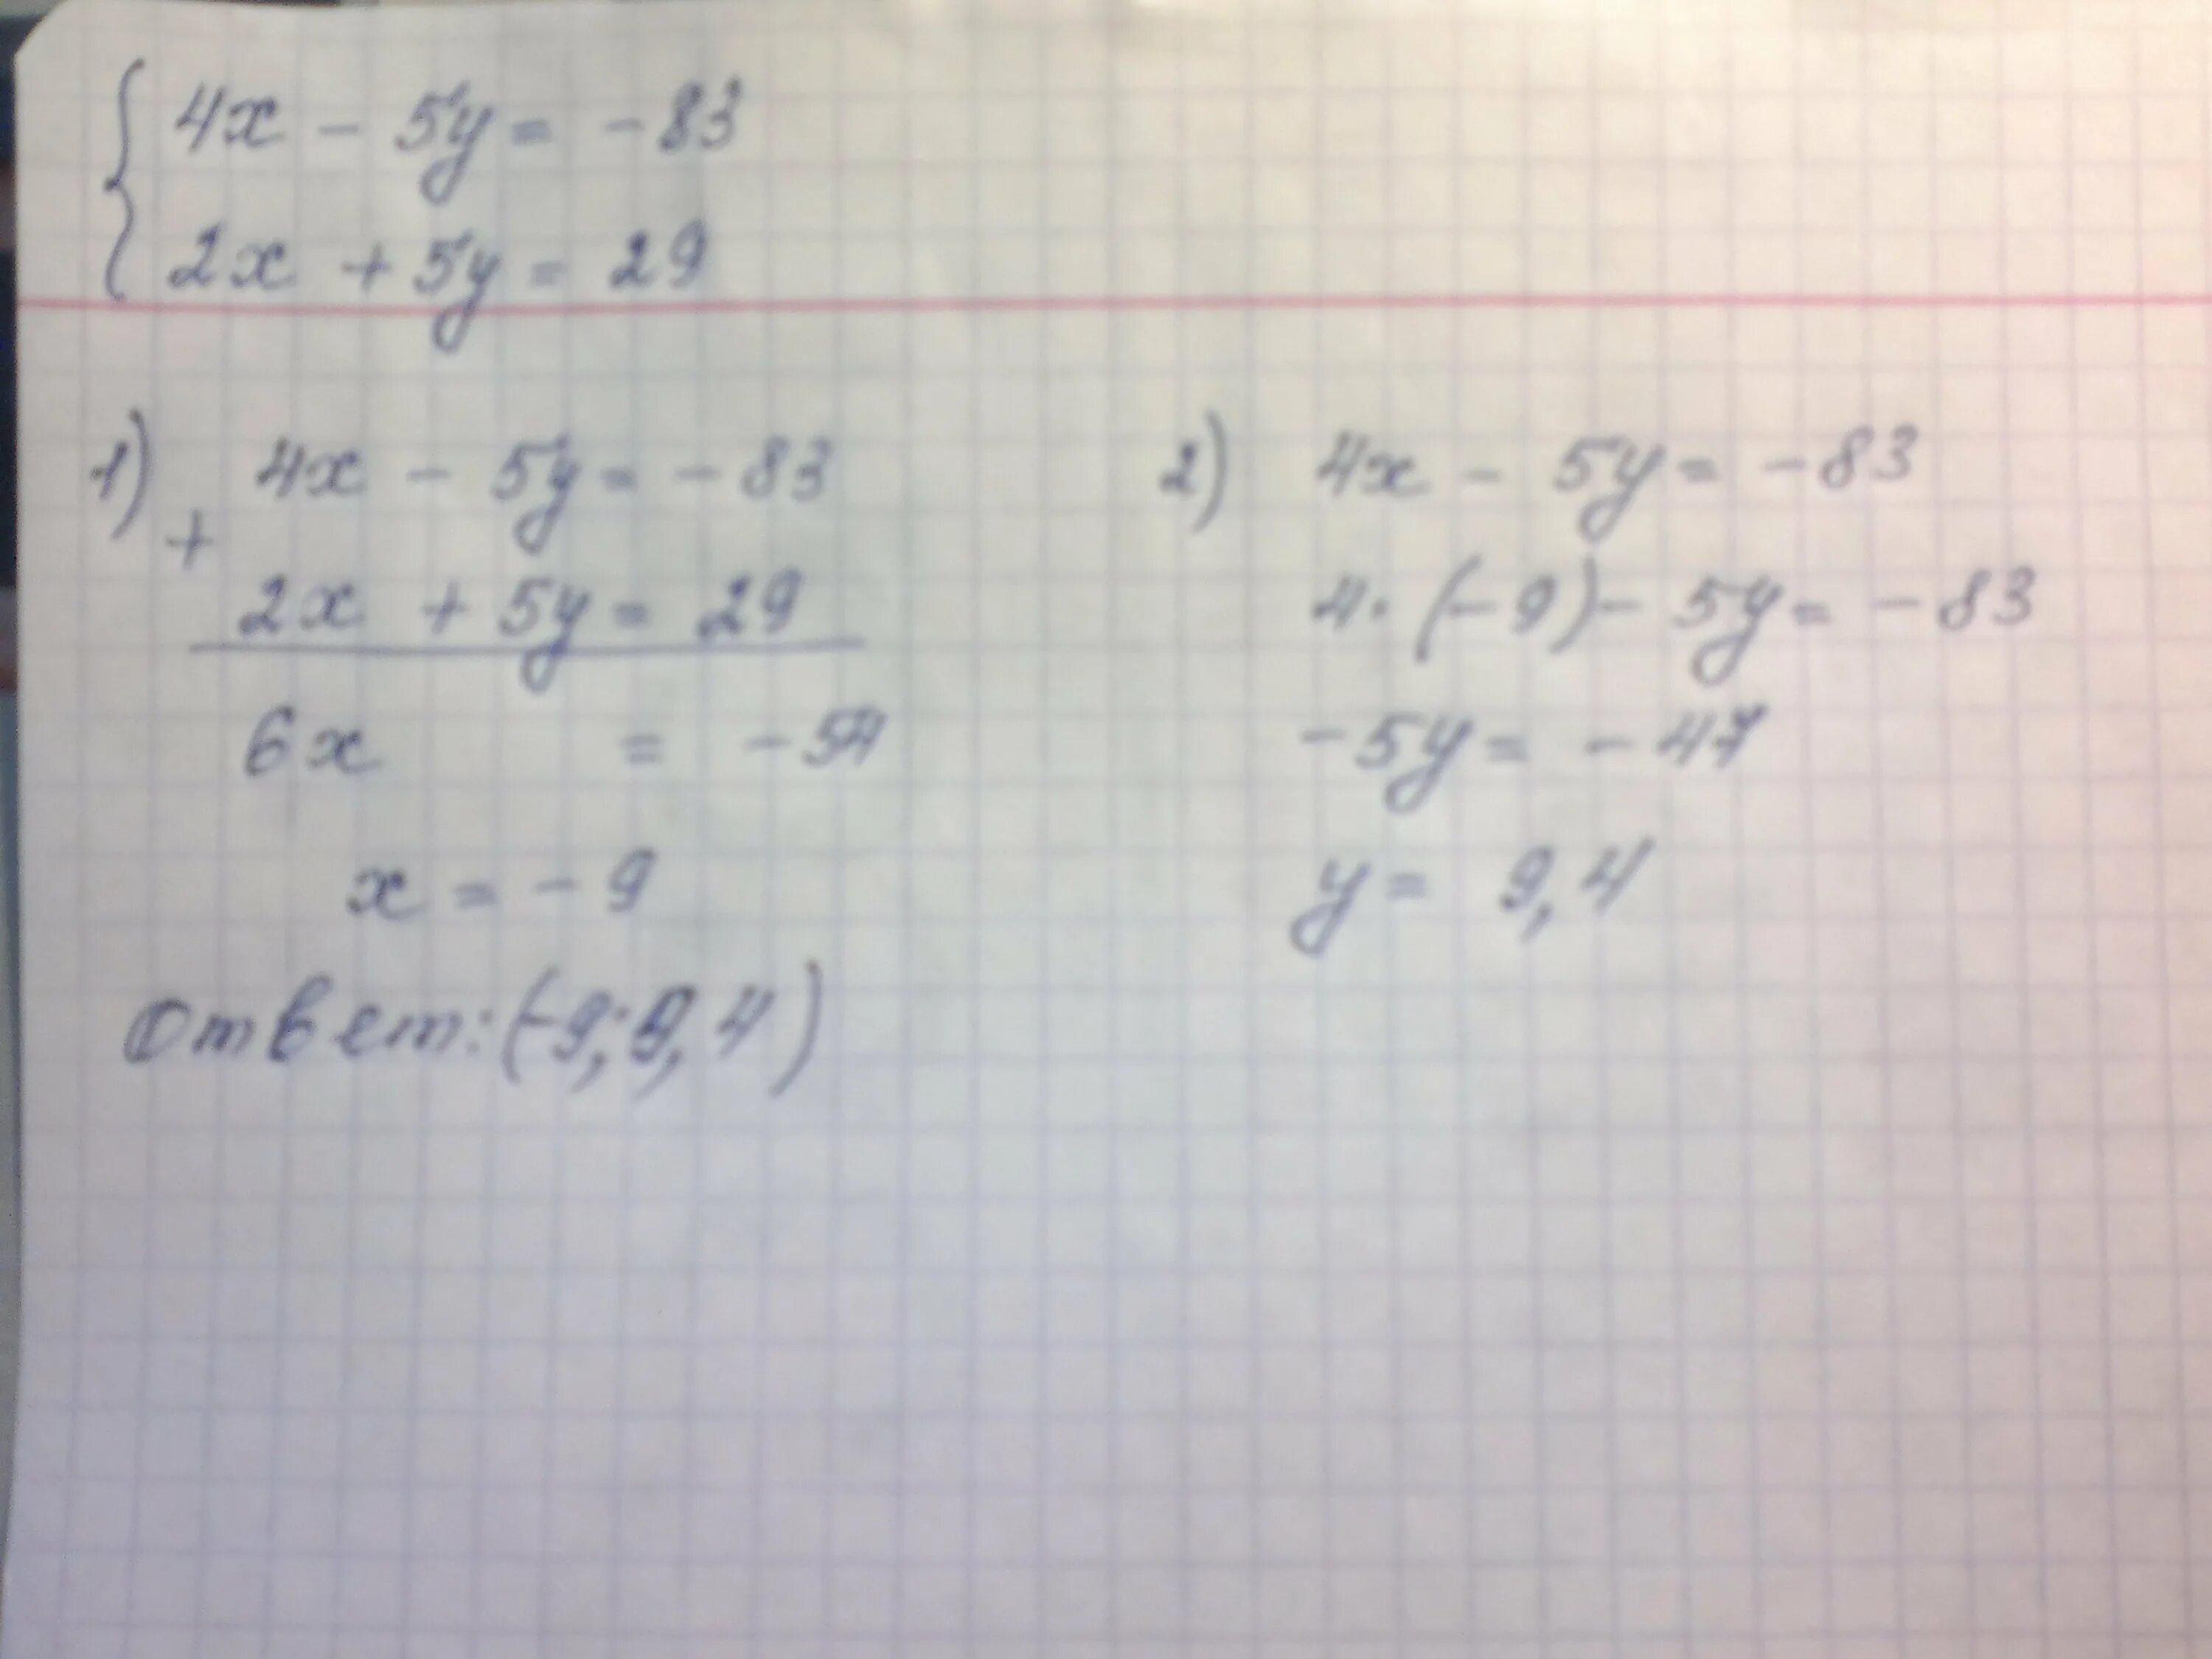 Реши уравнение 4 2x 2 2 2x. Решите методом сложения систему уравнений 4x-5y -83. Решите методом сложения систему уравнений 4x-5y -83 2x+5y 29. Решите методом сложения систему уравнения 4 x. 4x-5y=-83 2x+5y=29.